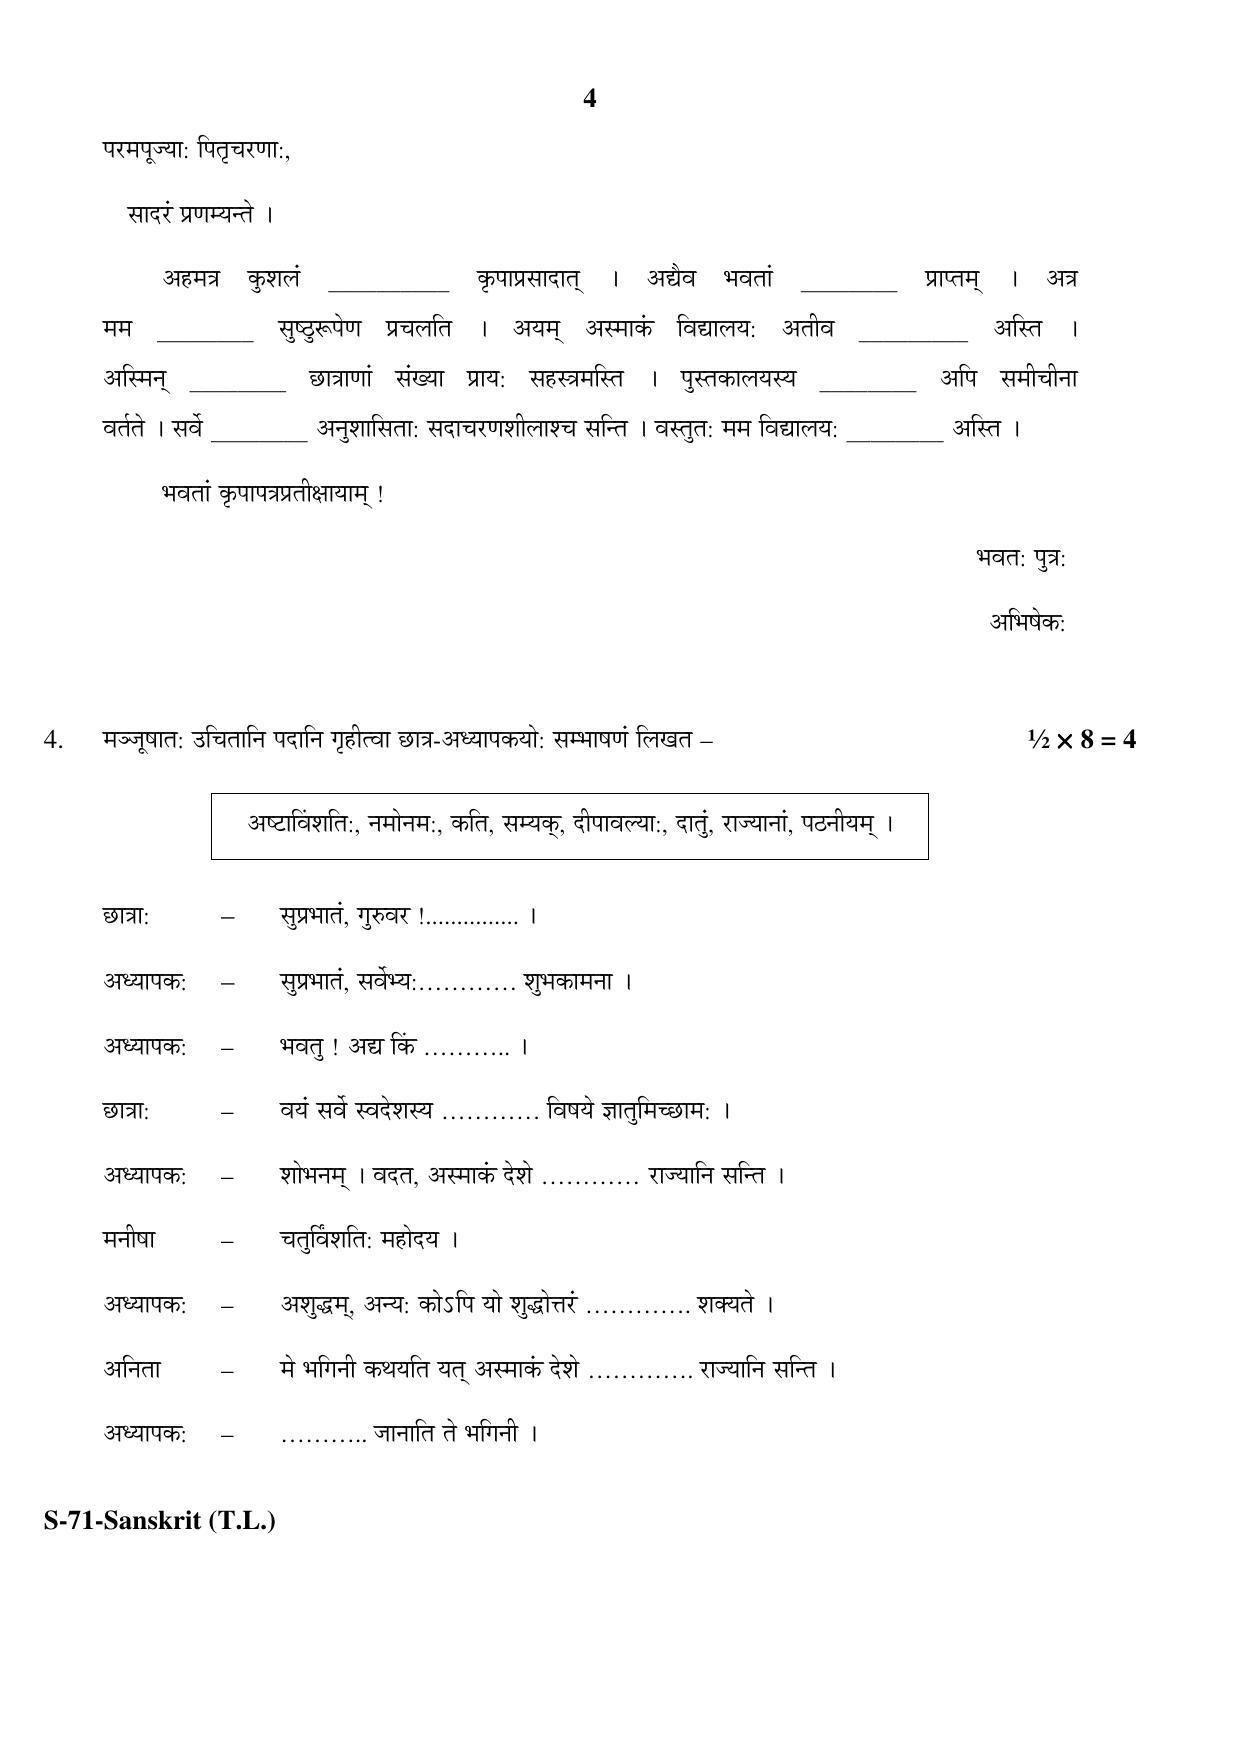 RBSE Class 10 Sanskrit (T.L.) 2017 Question Paper - Page 4